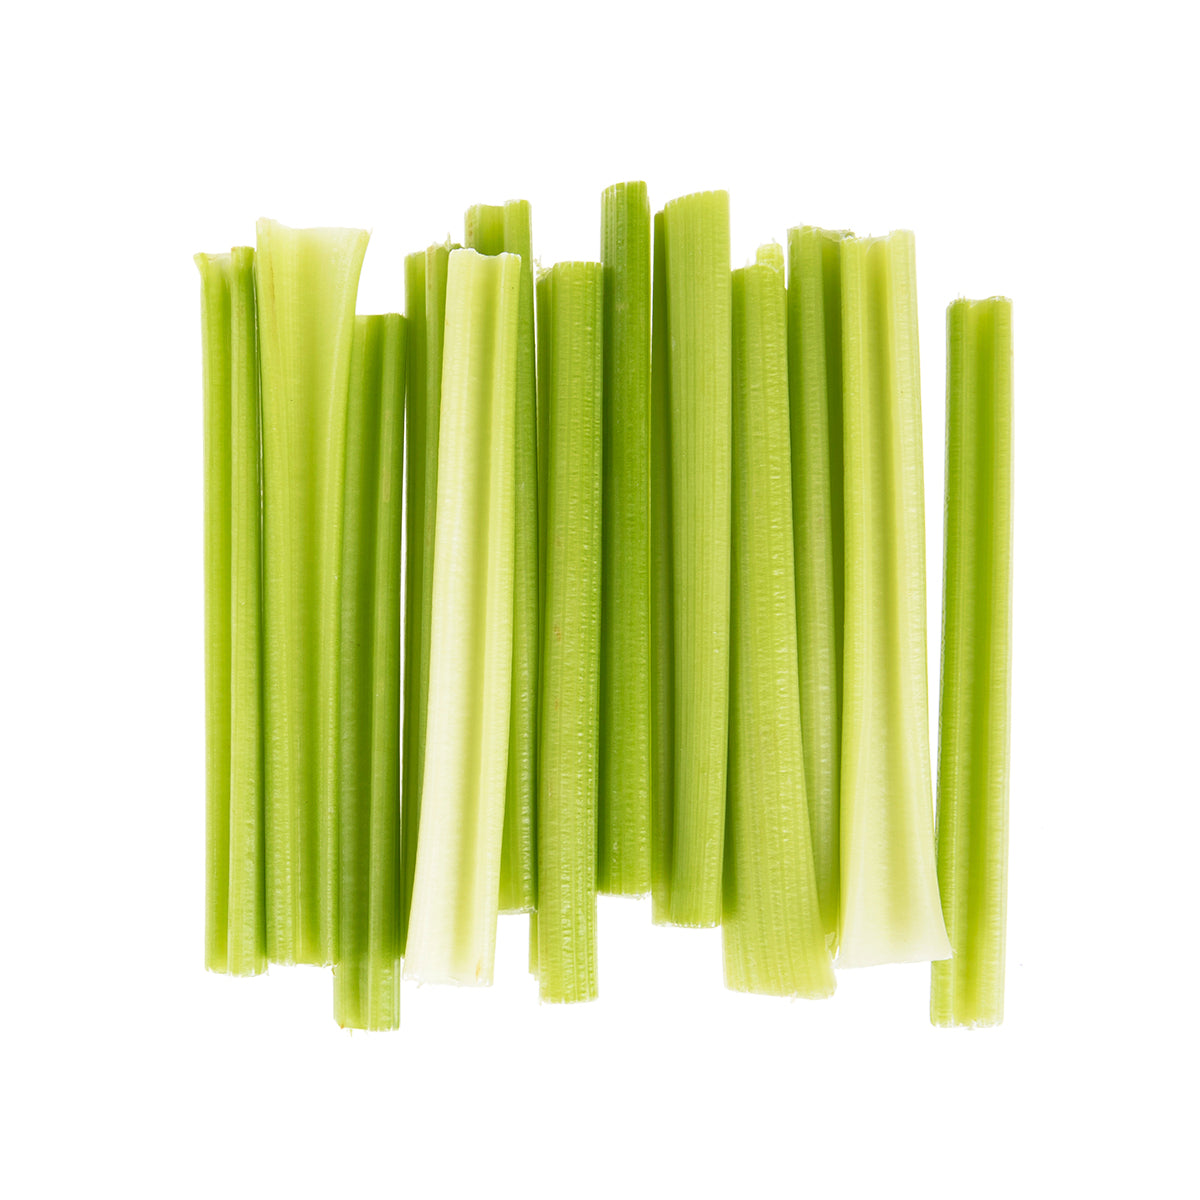 BoxNCase Celery Sticks